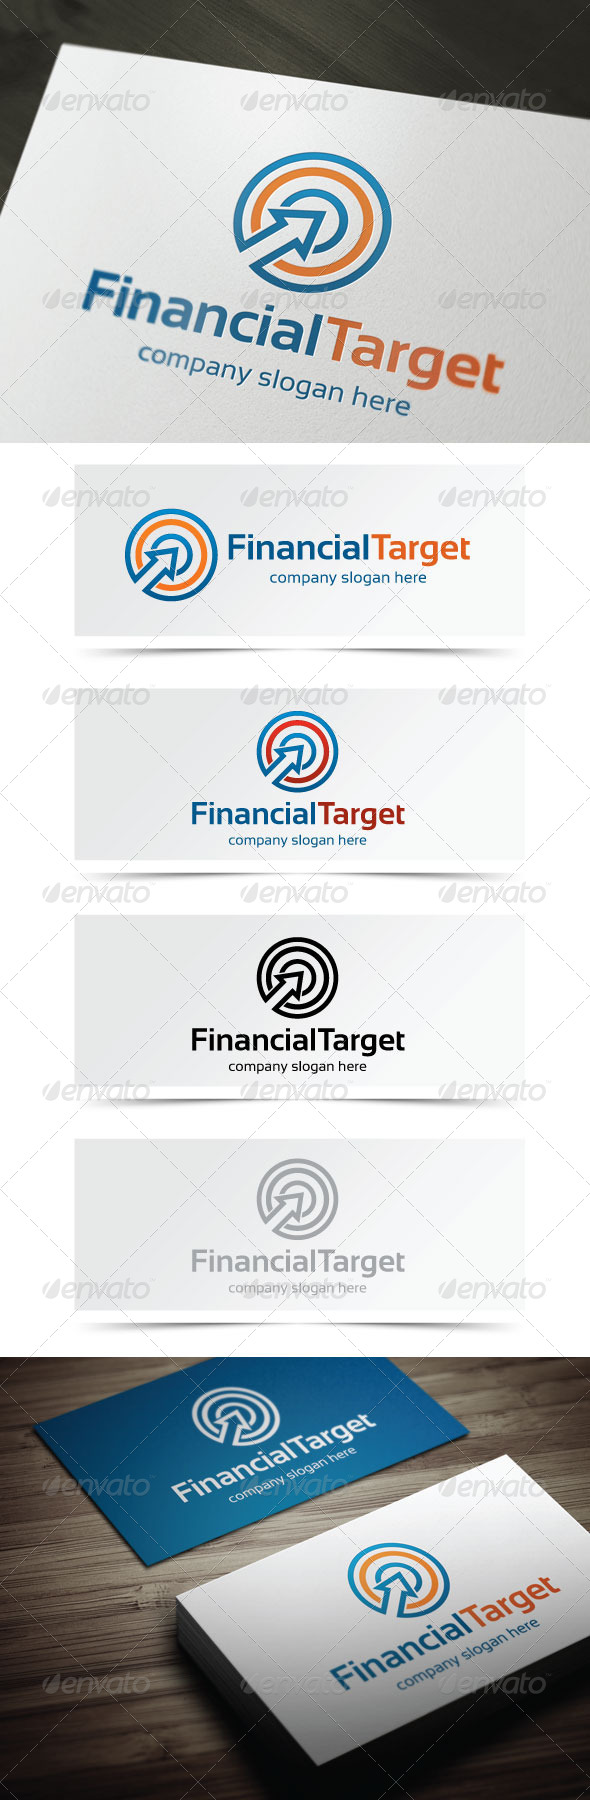 Financial Target